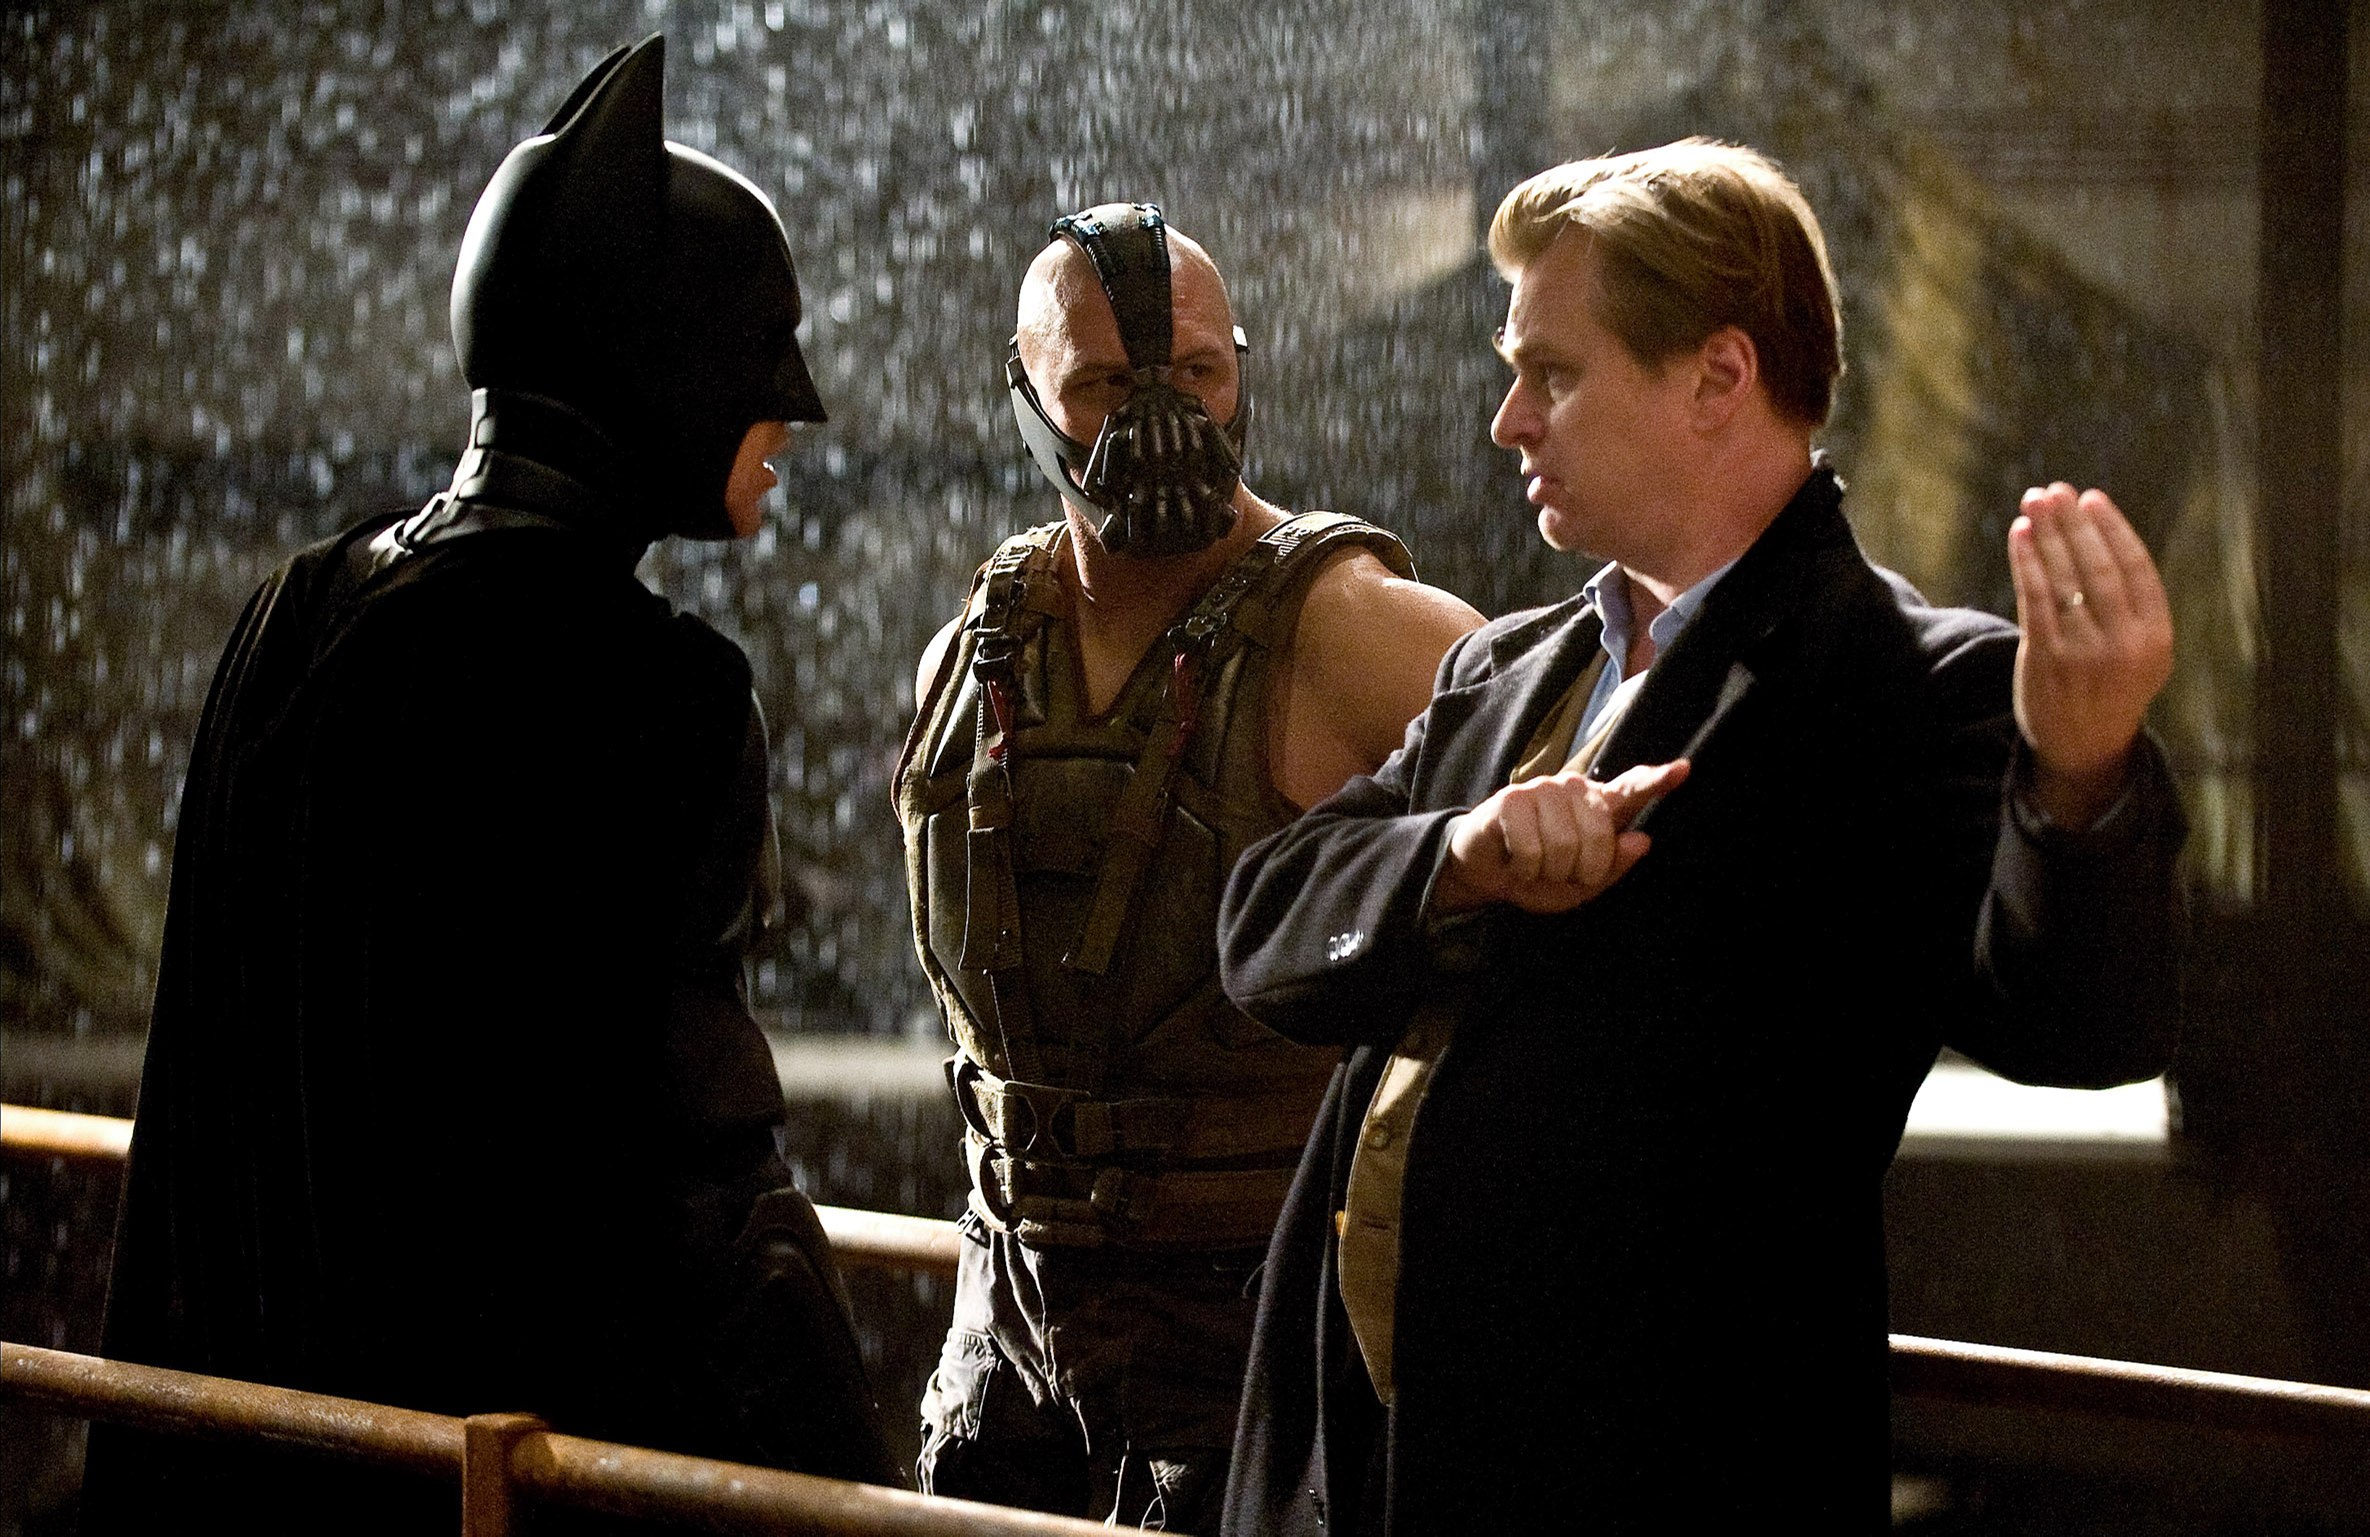 Film Baru Christopher Nolan Mulai Casting - blackxperience.com